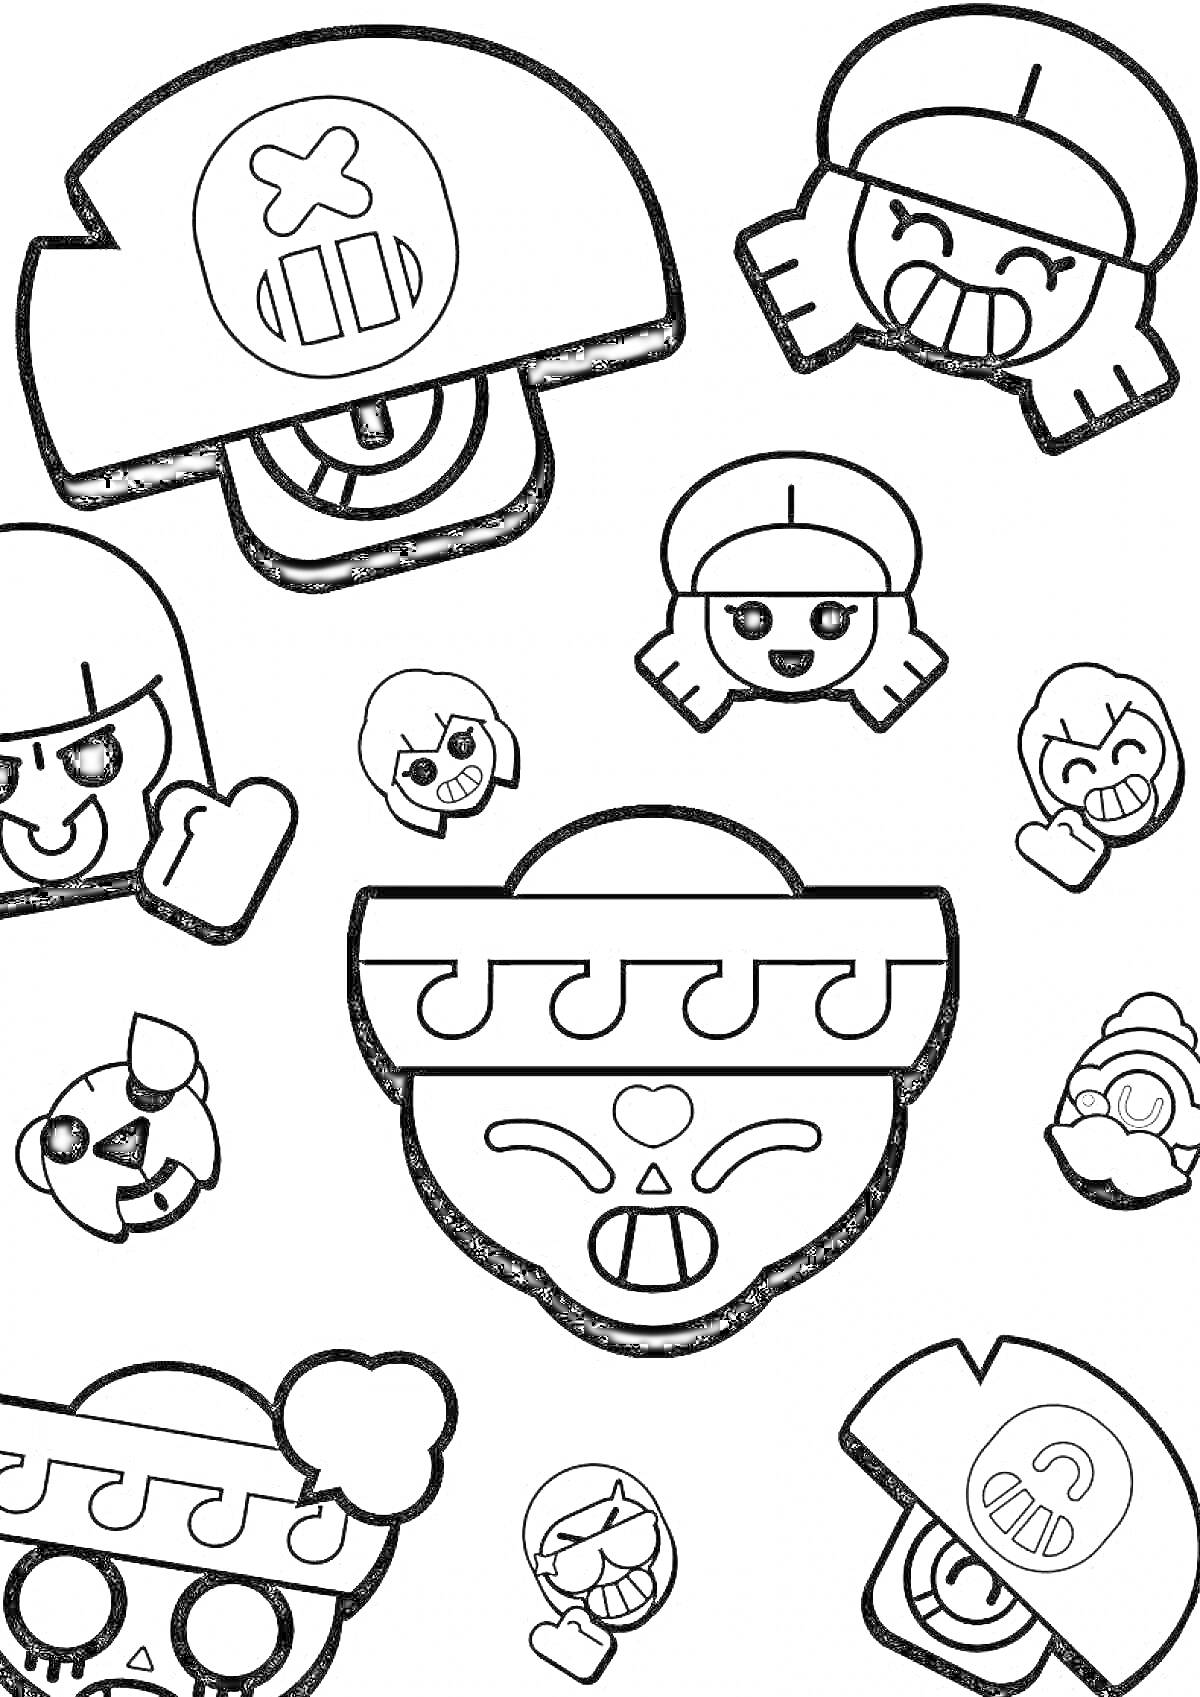 Раскраска смайлики персонажей из игры Браво Старс, включая смайлики с каской, девушкой с косичками, черепом в маске и другими забавными выражениями лиц